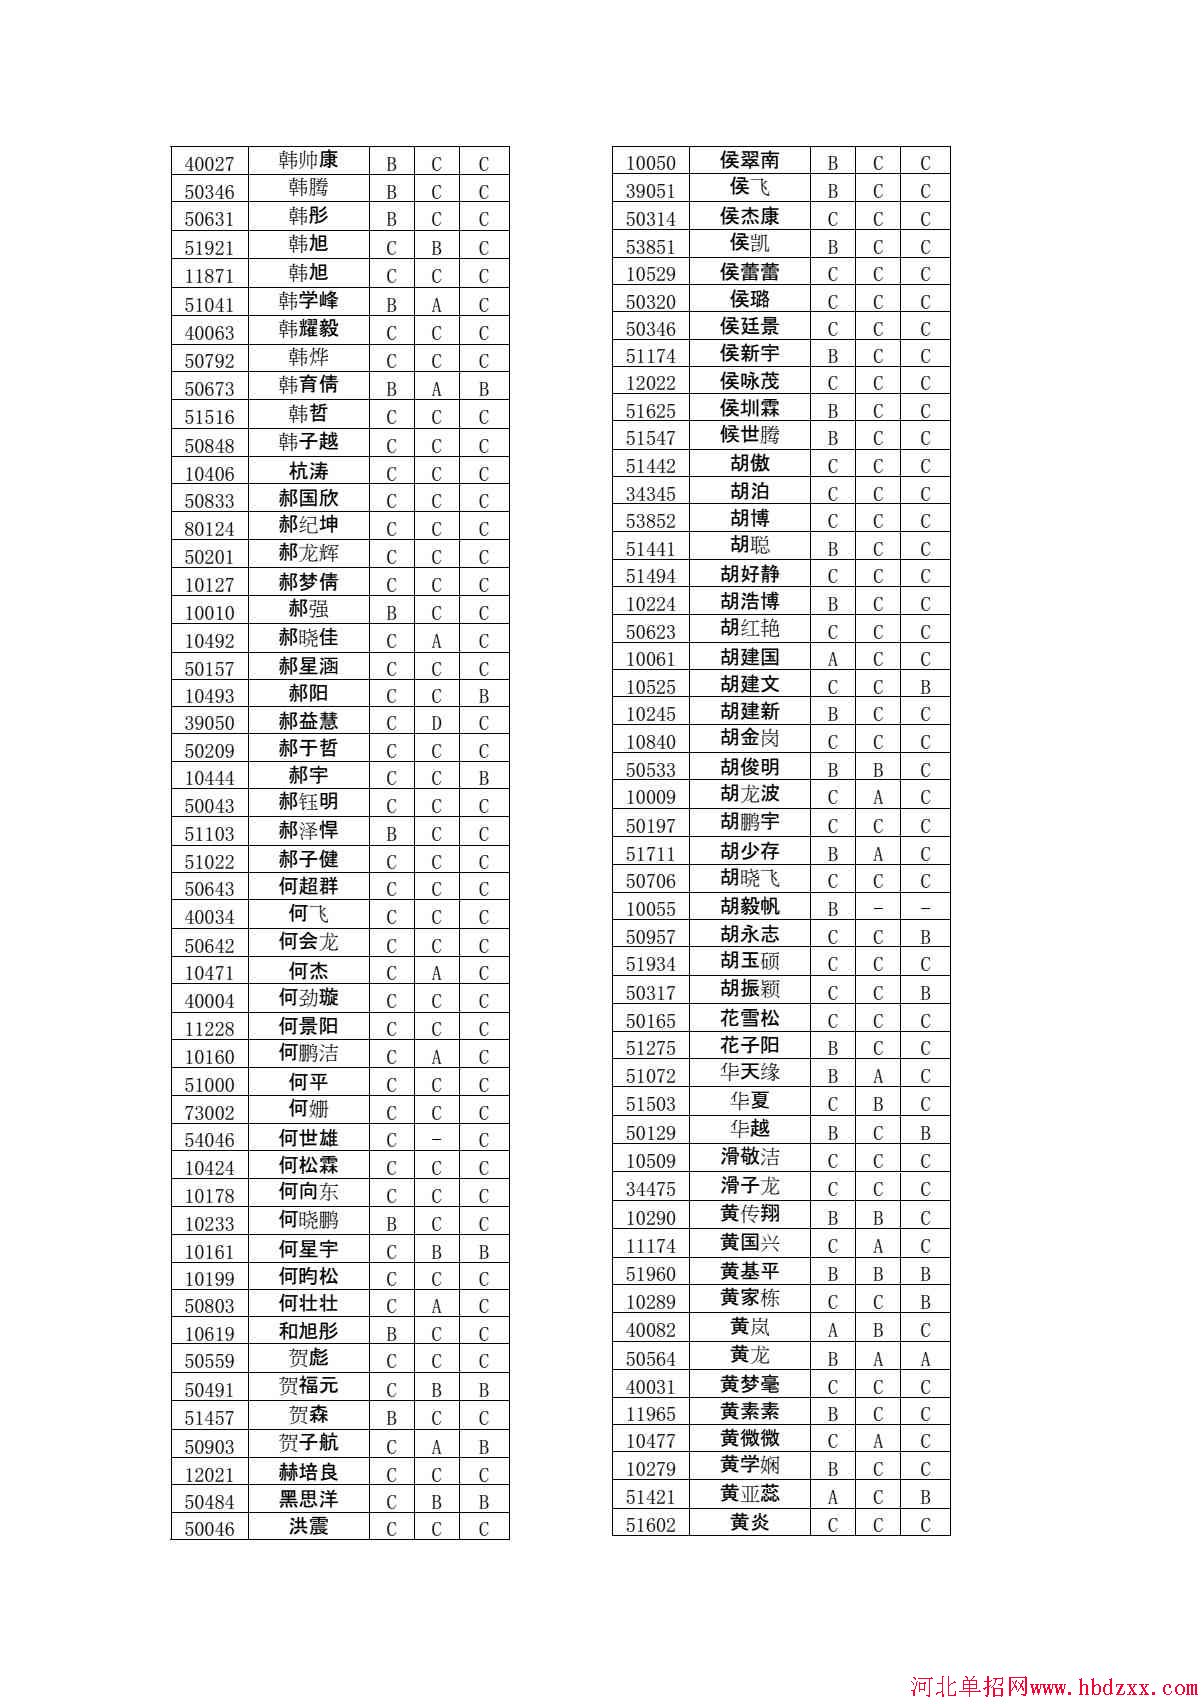 石家庄铁路职业技术学院2015年单独考试招生学问有免考资格考生名单 图2